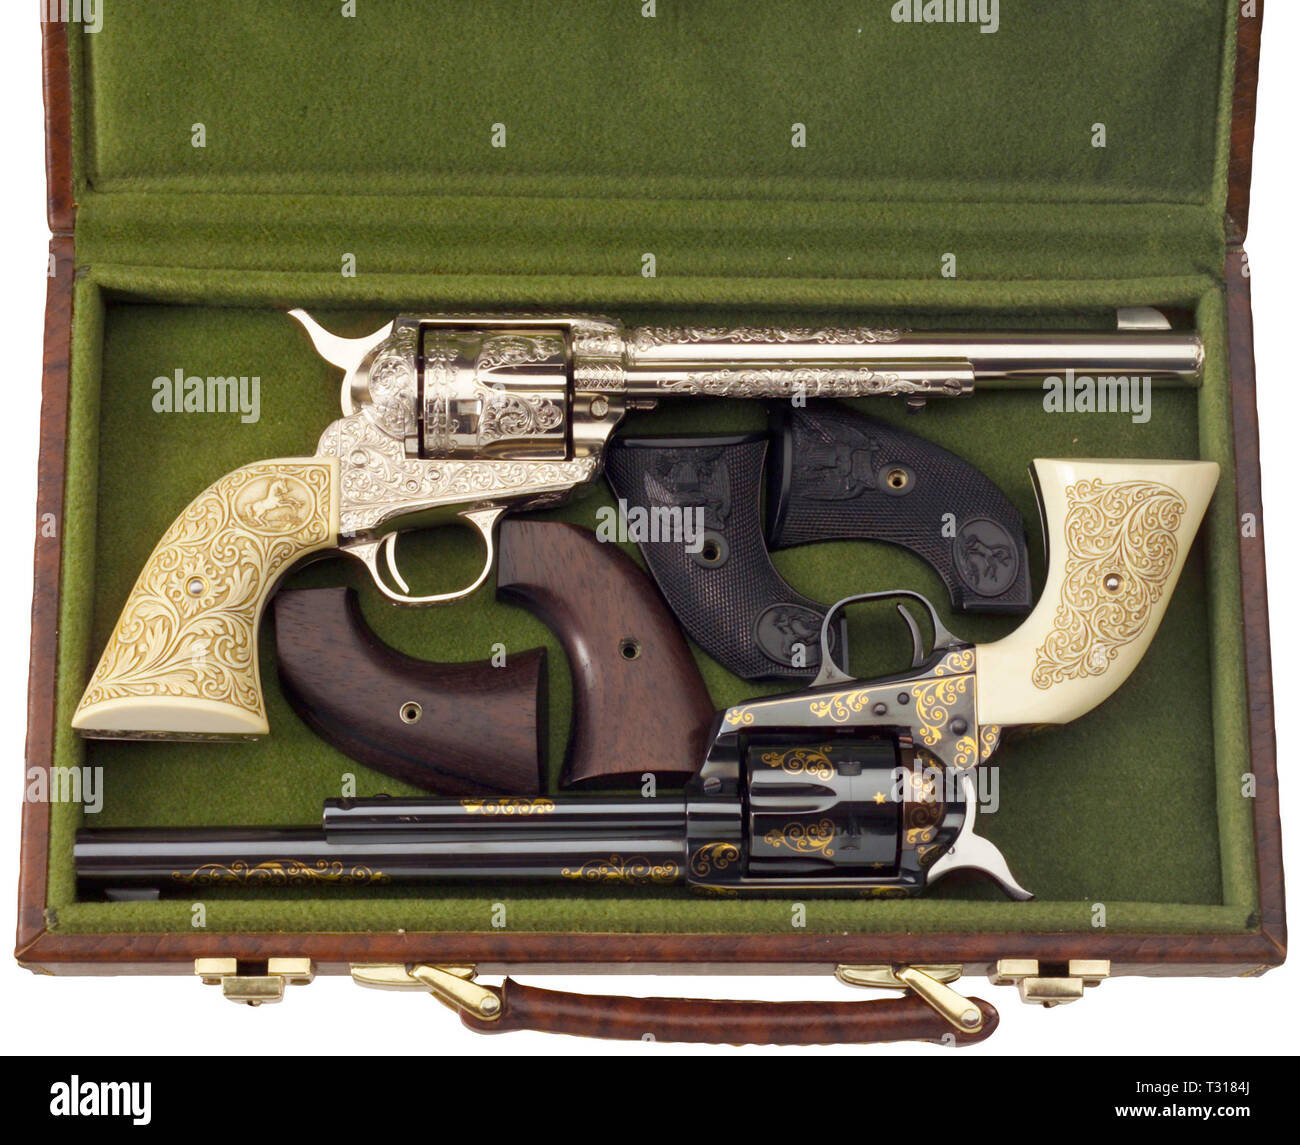 Armi di piccolo calibro, revolver Colt unica azione Army Model 1873 pacificatore, calibro .45, Editorial-Use-solo Foto Stock